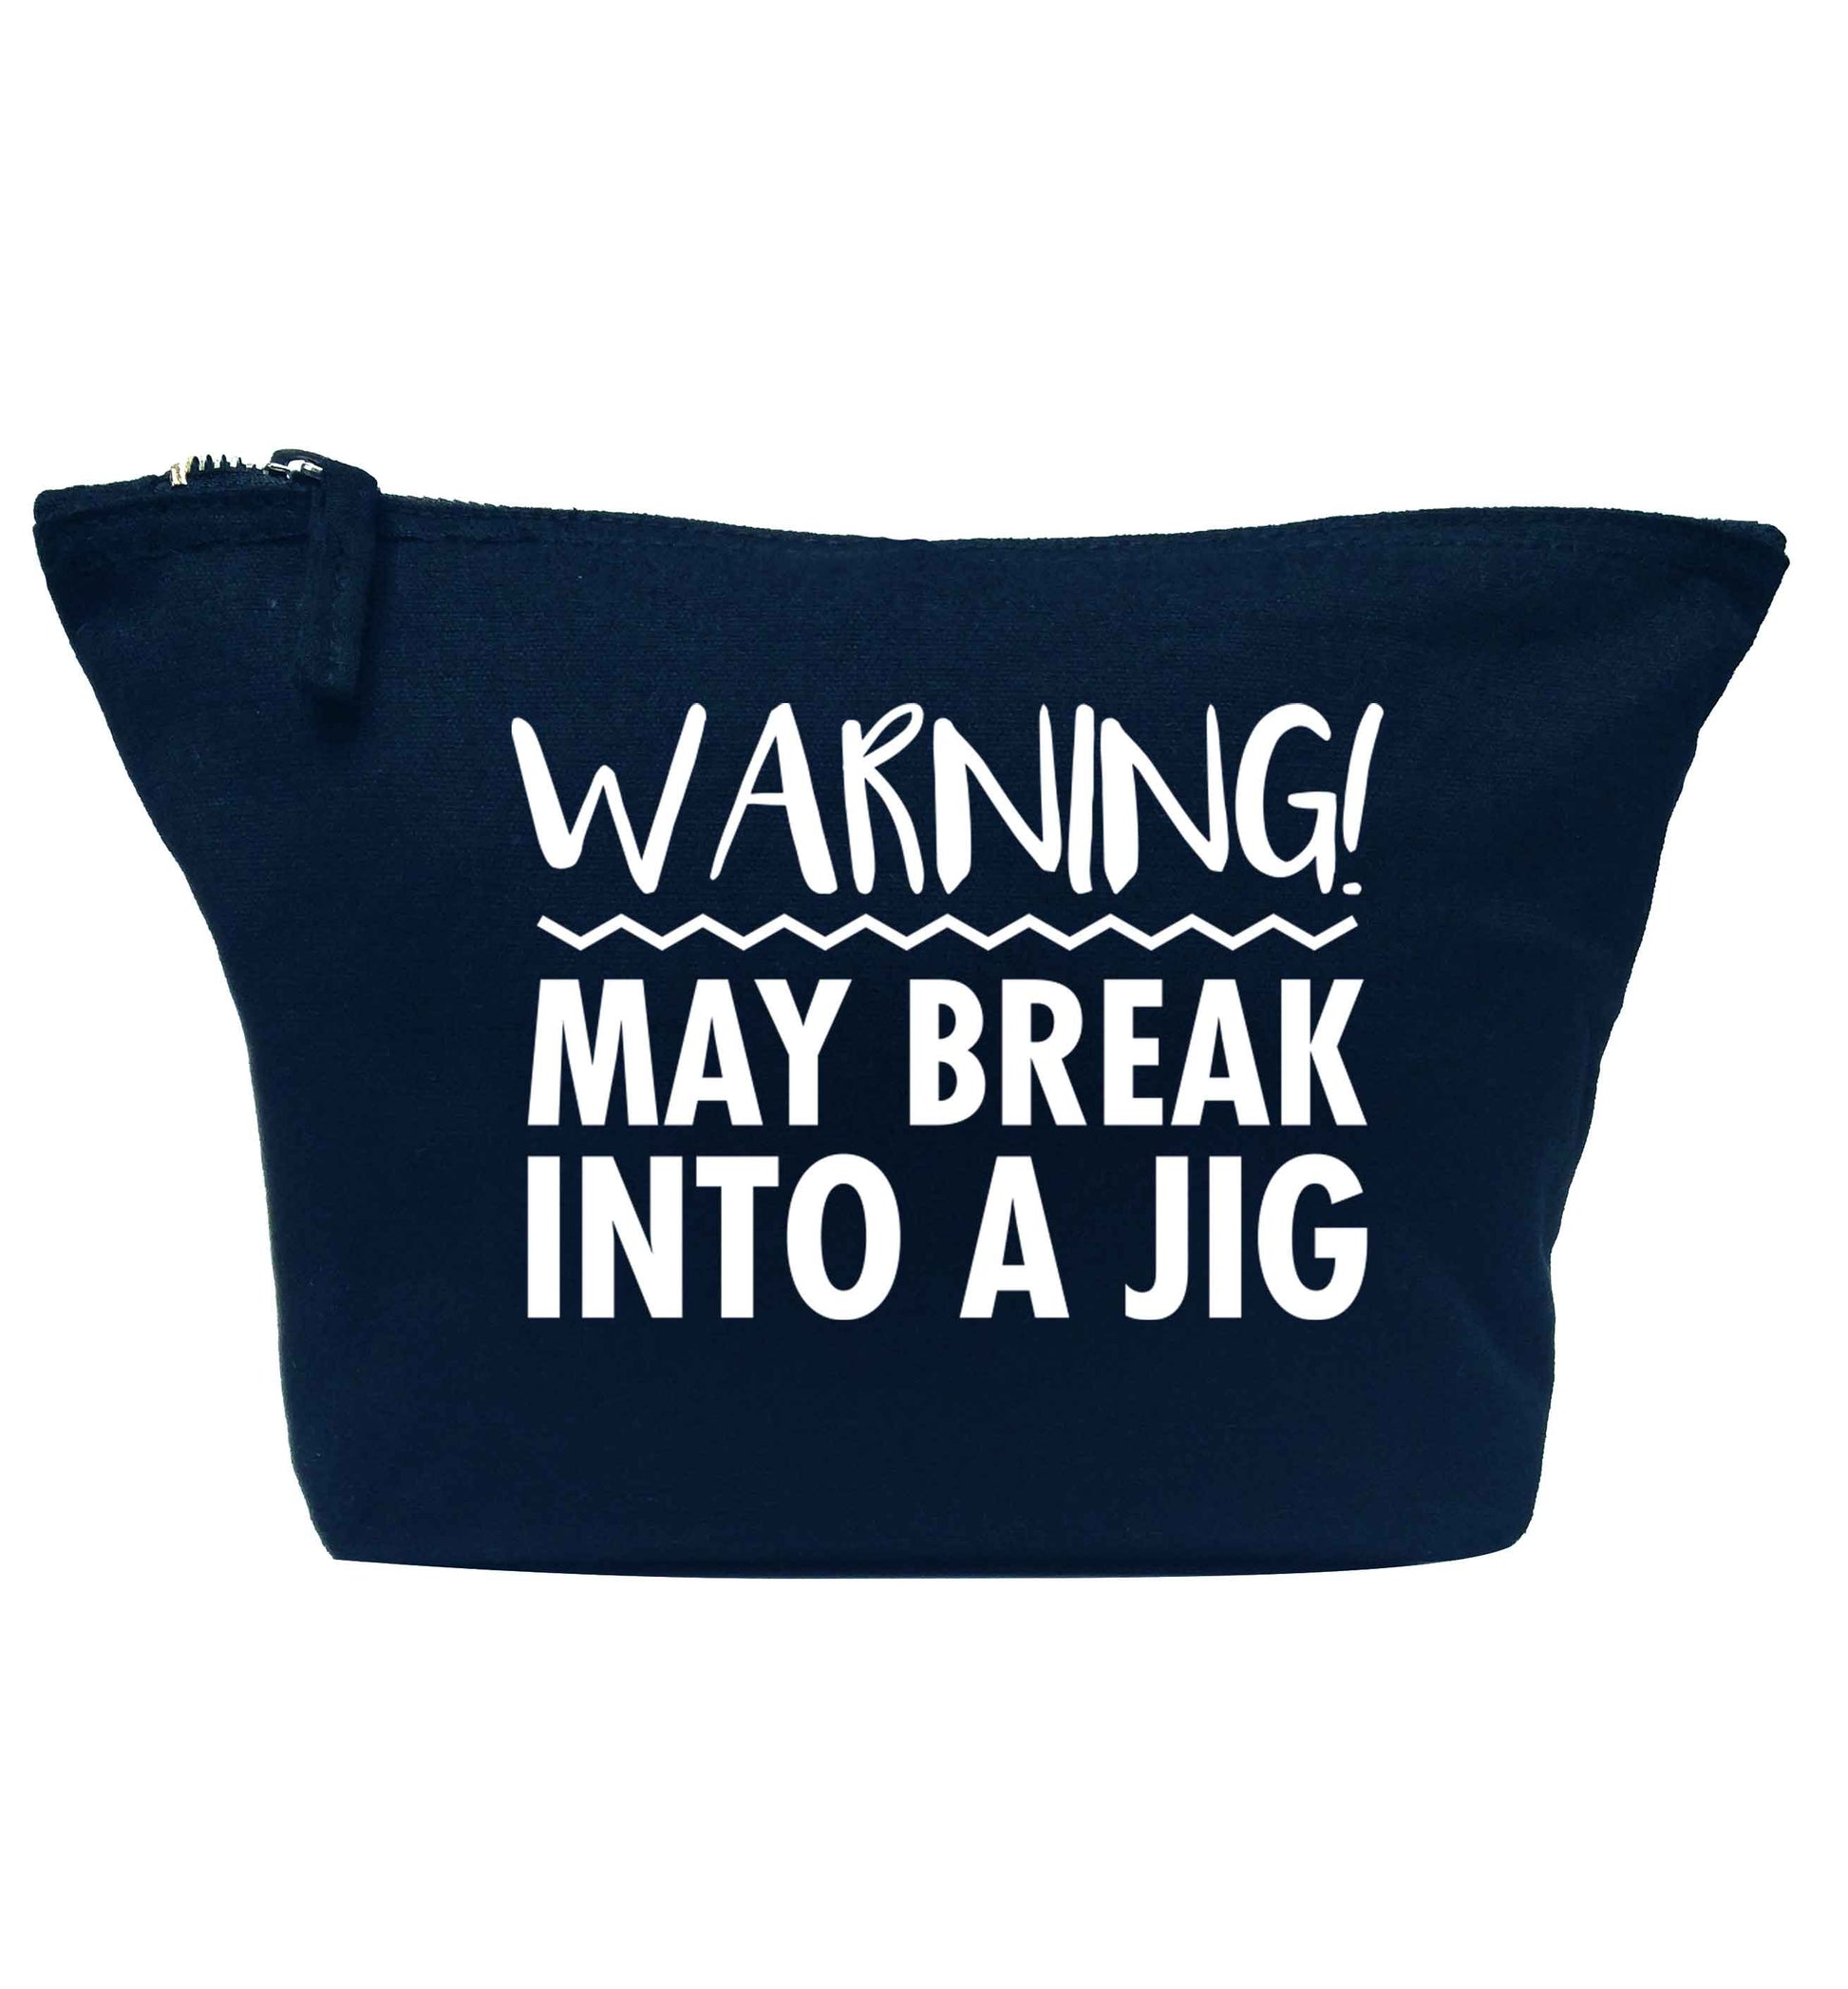 Warning may break into a jig navy makeup bag